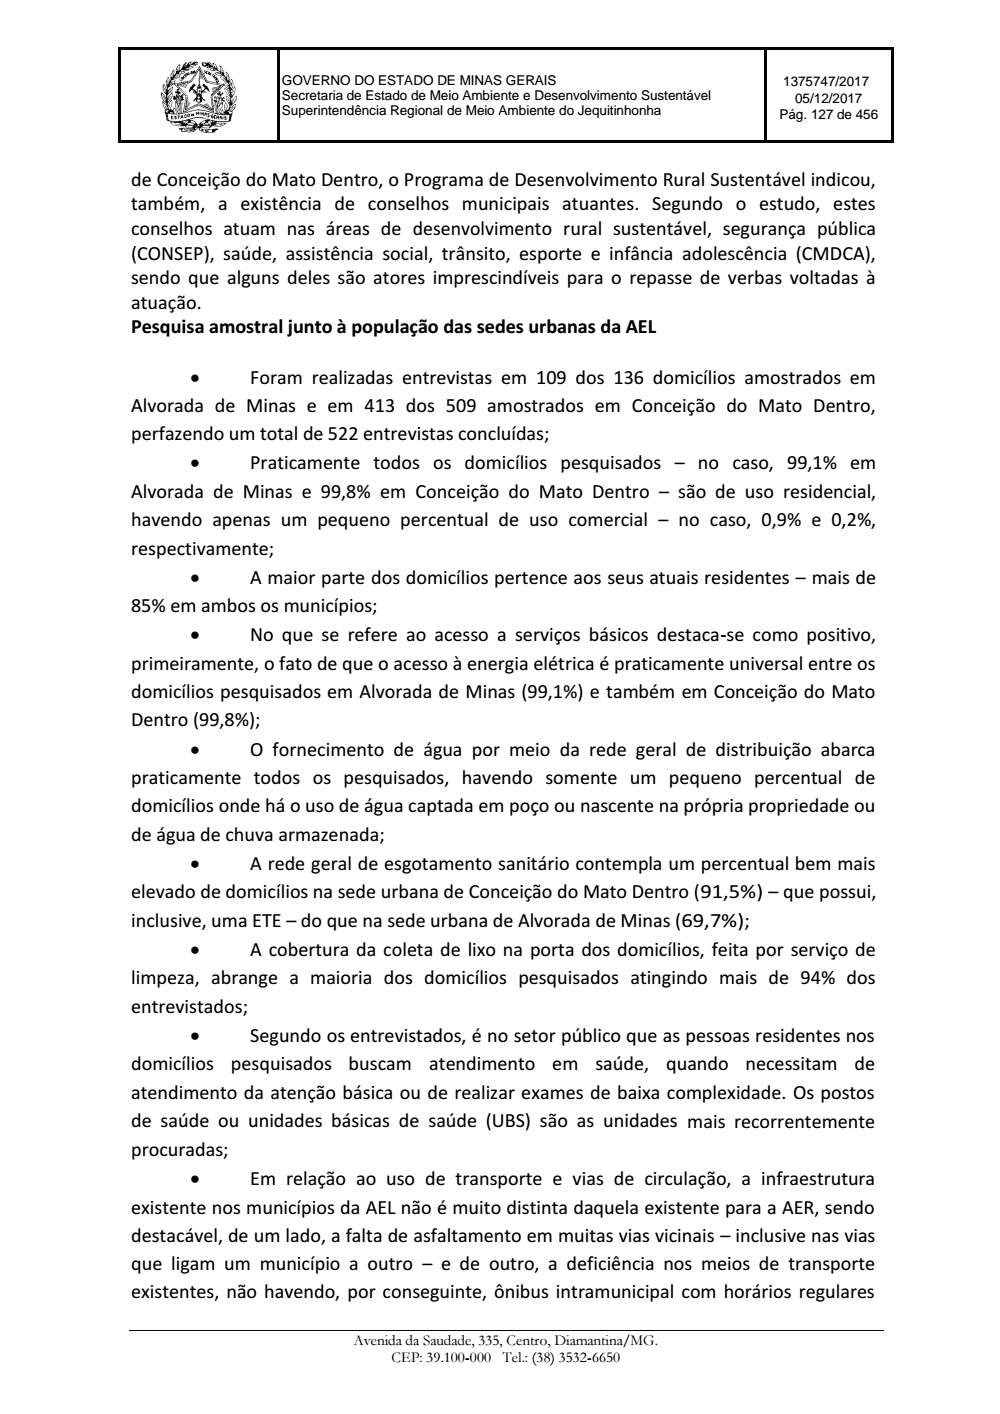 Page 127 from Parecer único da Secretaria de estado de Meio Ambiente e Desenvolvimento Sustentável (SEMAD)